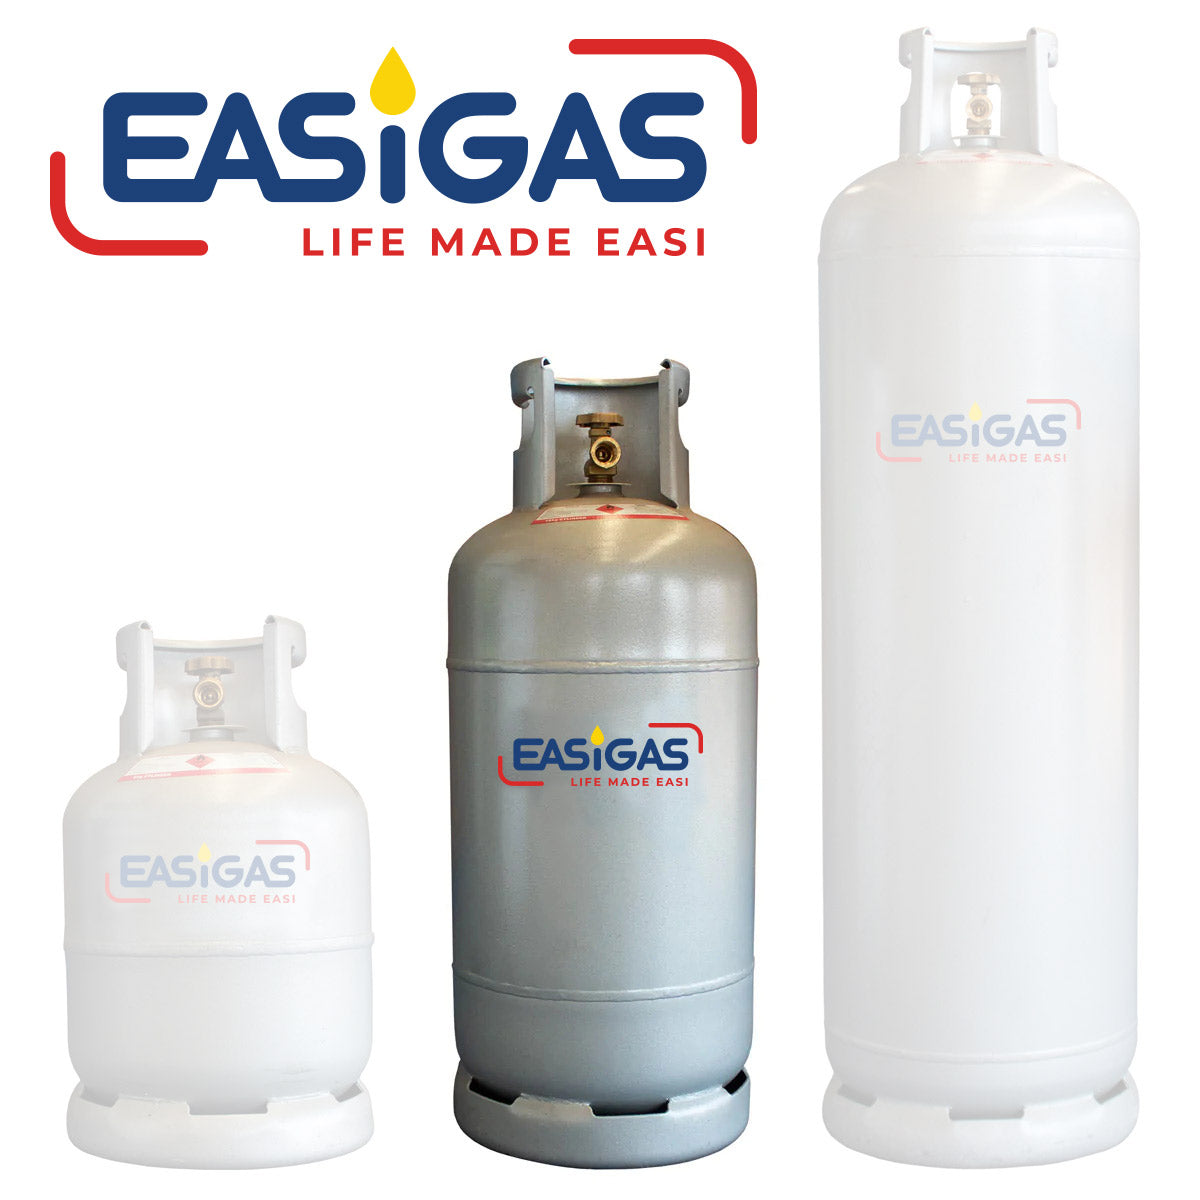 Easigas Gas Cylinder Exchange, Delivered to Your Door